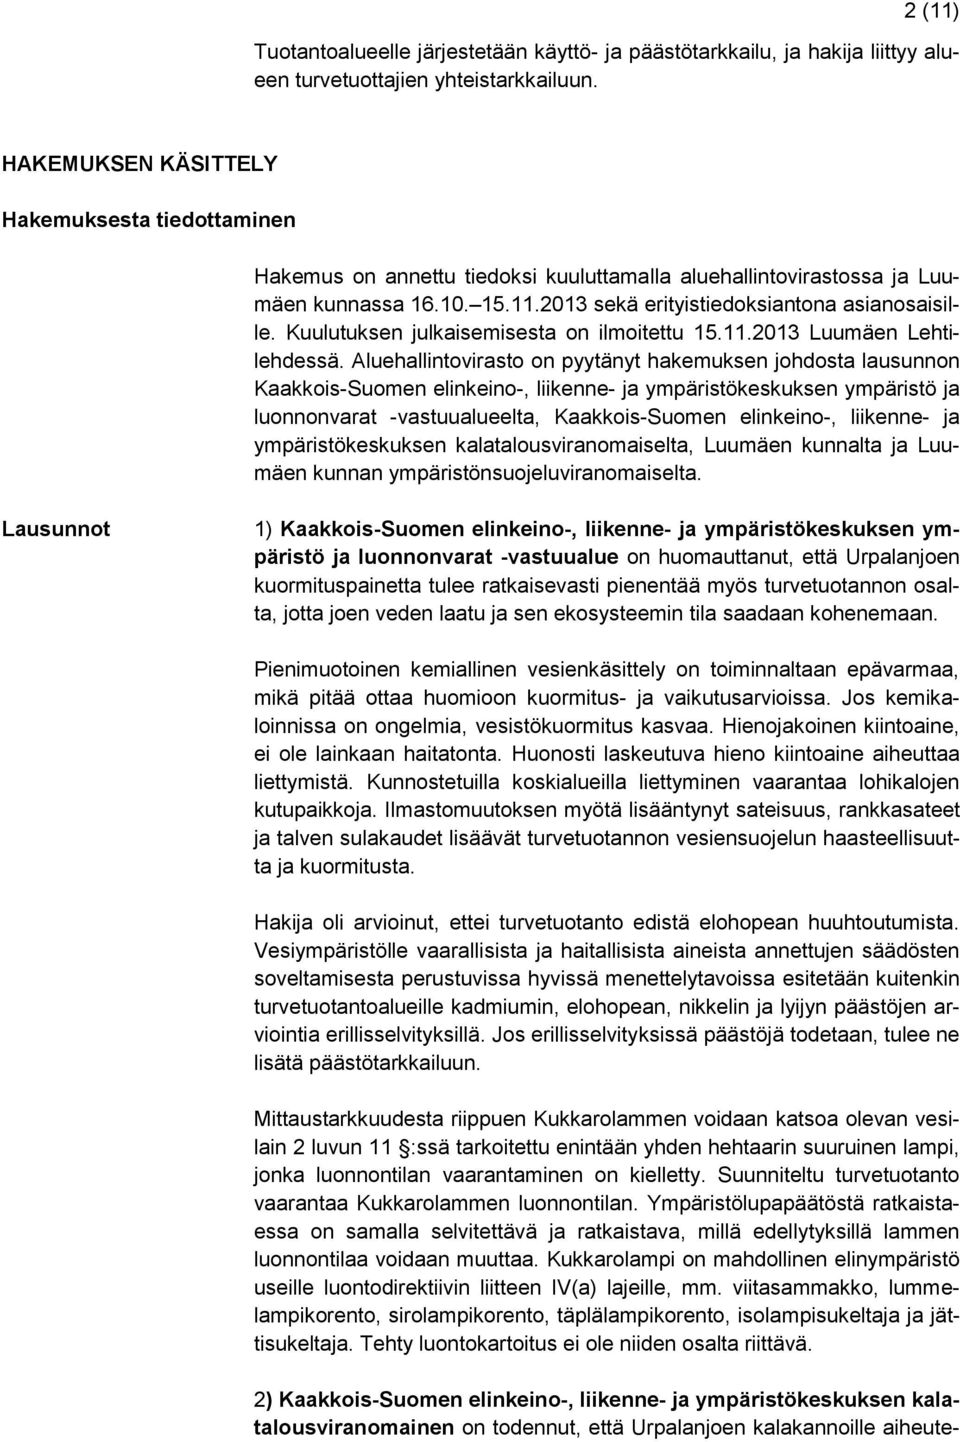 Kuulutuksen julkaisemisesta on ilmoitettu 15.11.2013 Luumäen Lehtilehdessä.